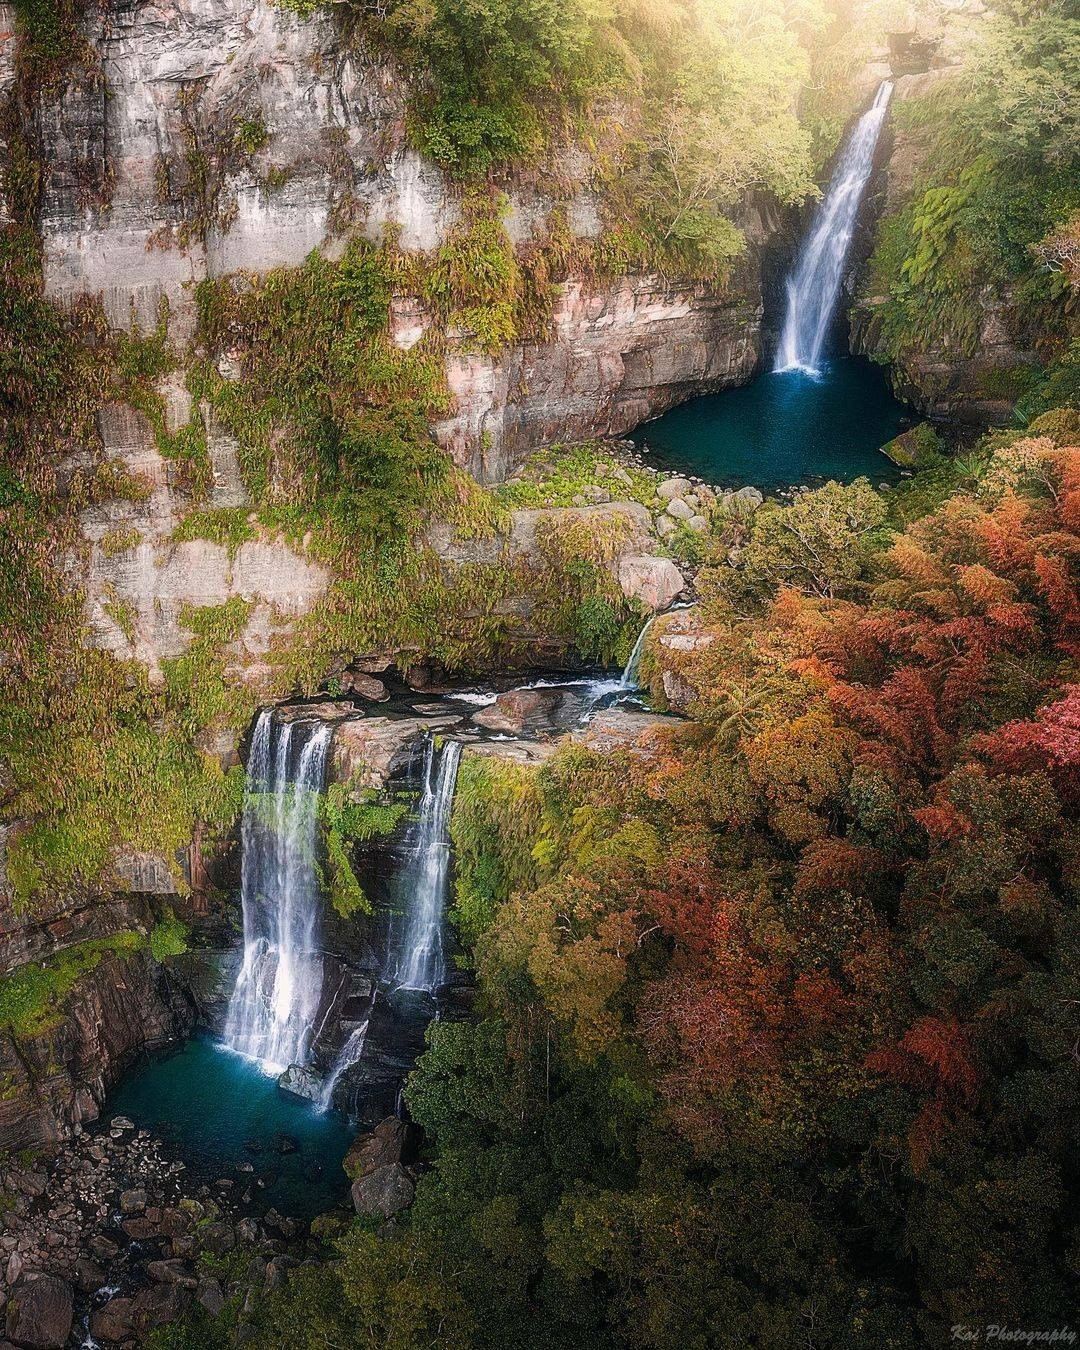 好想跳入瀑布下的水池悠游在阿里山的美景裡！-⠀⠀⠀⠀⠀⠀⠀⠀⠀⠀⠀感謝 @shengkai_travel 分享的美照-⠀⠀⠀⠀⠀⠀...